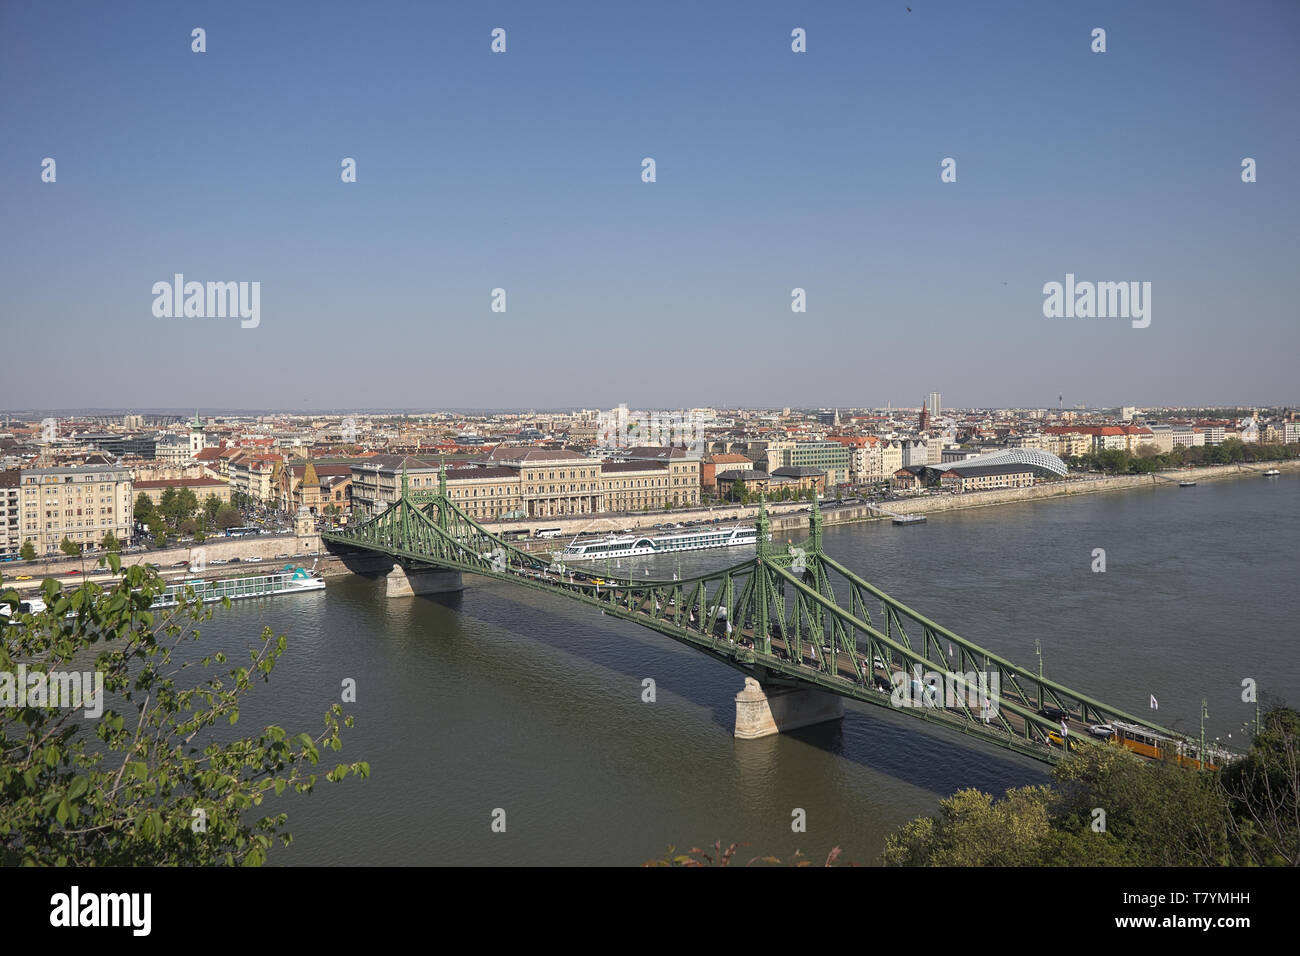 Budapest Hongrie 224 2019 ; pont de la liberté vu de la colline Gellert. Angle de vue élevé. Banque D'Images